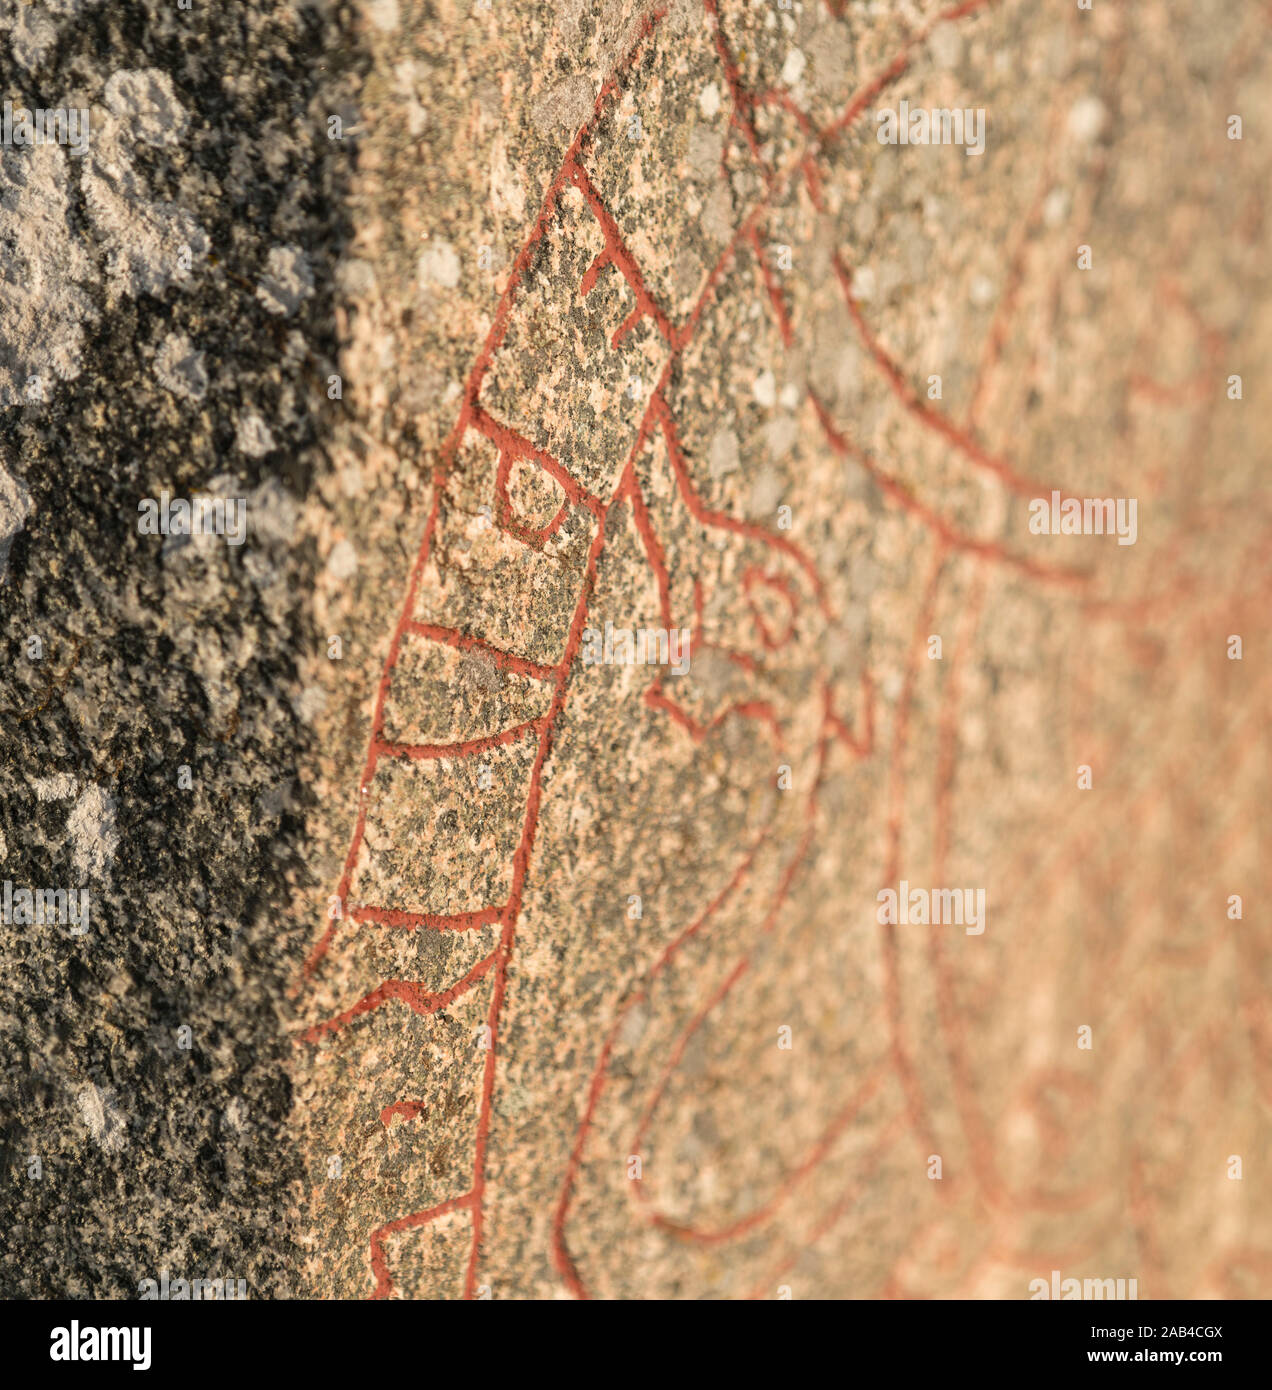 Età dei Vichinghi iscrizione runica su un runestone Eneberga a. Parrocchia Frösunda, Enköping, Uppland, Svezia e Scandinavia. Foto Stock